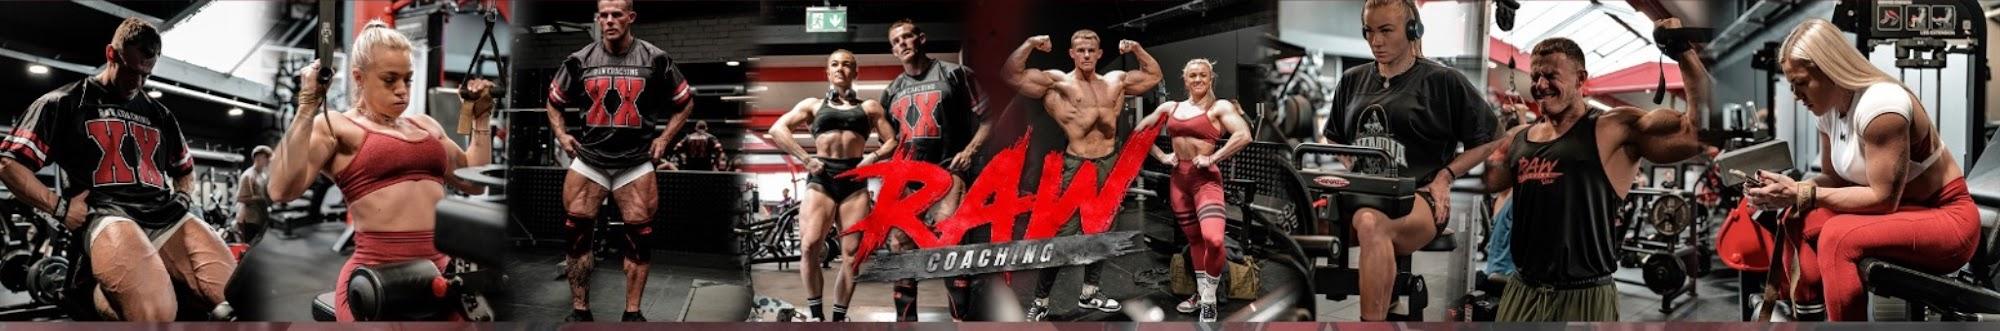 Raw Coaching